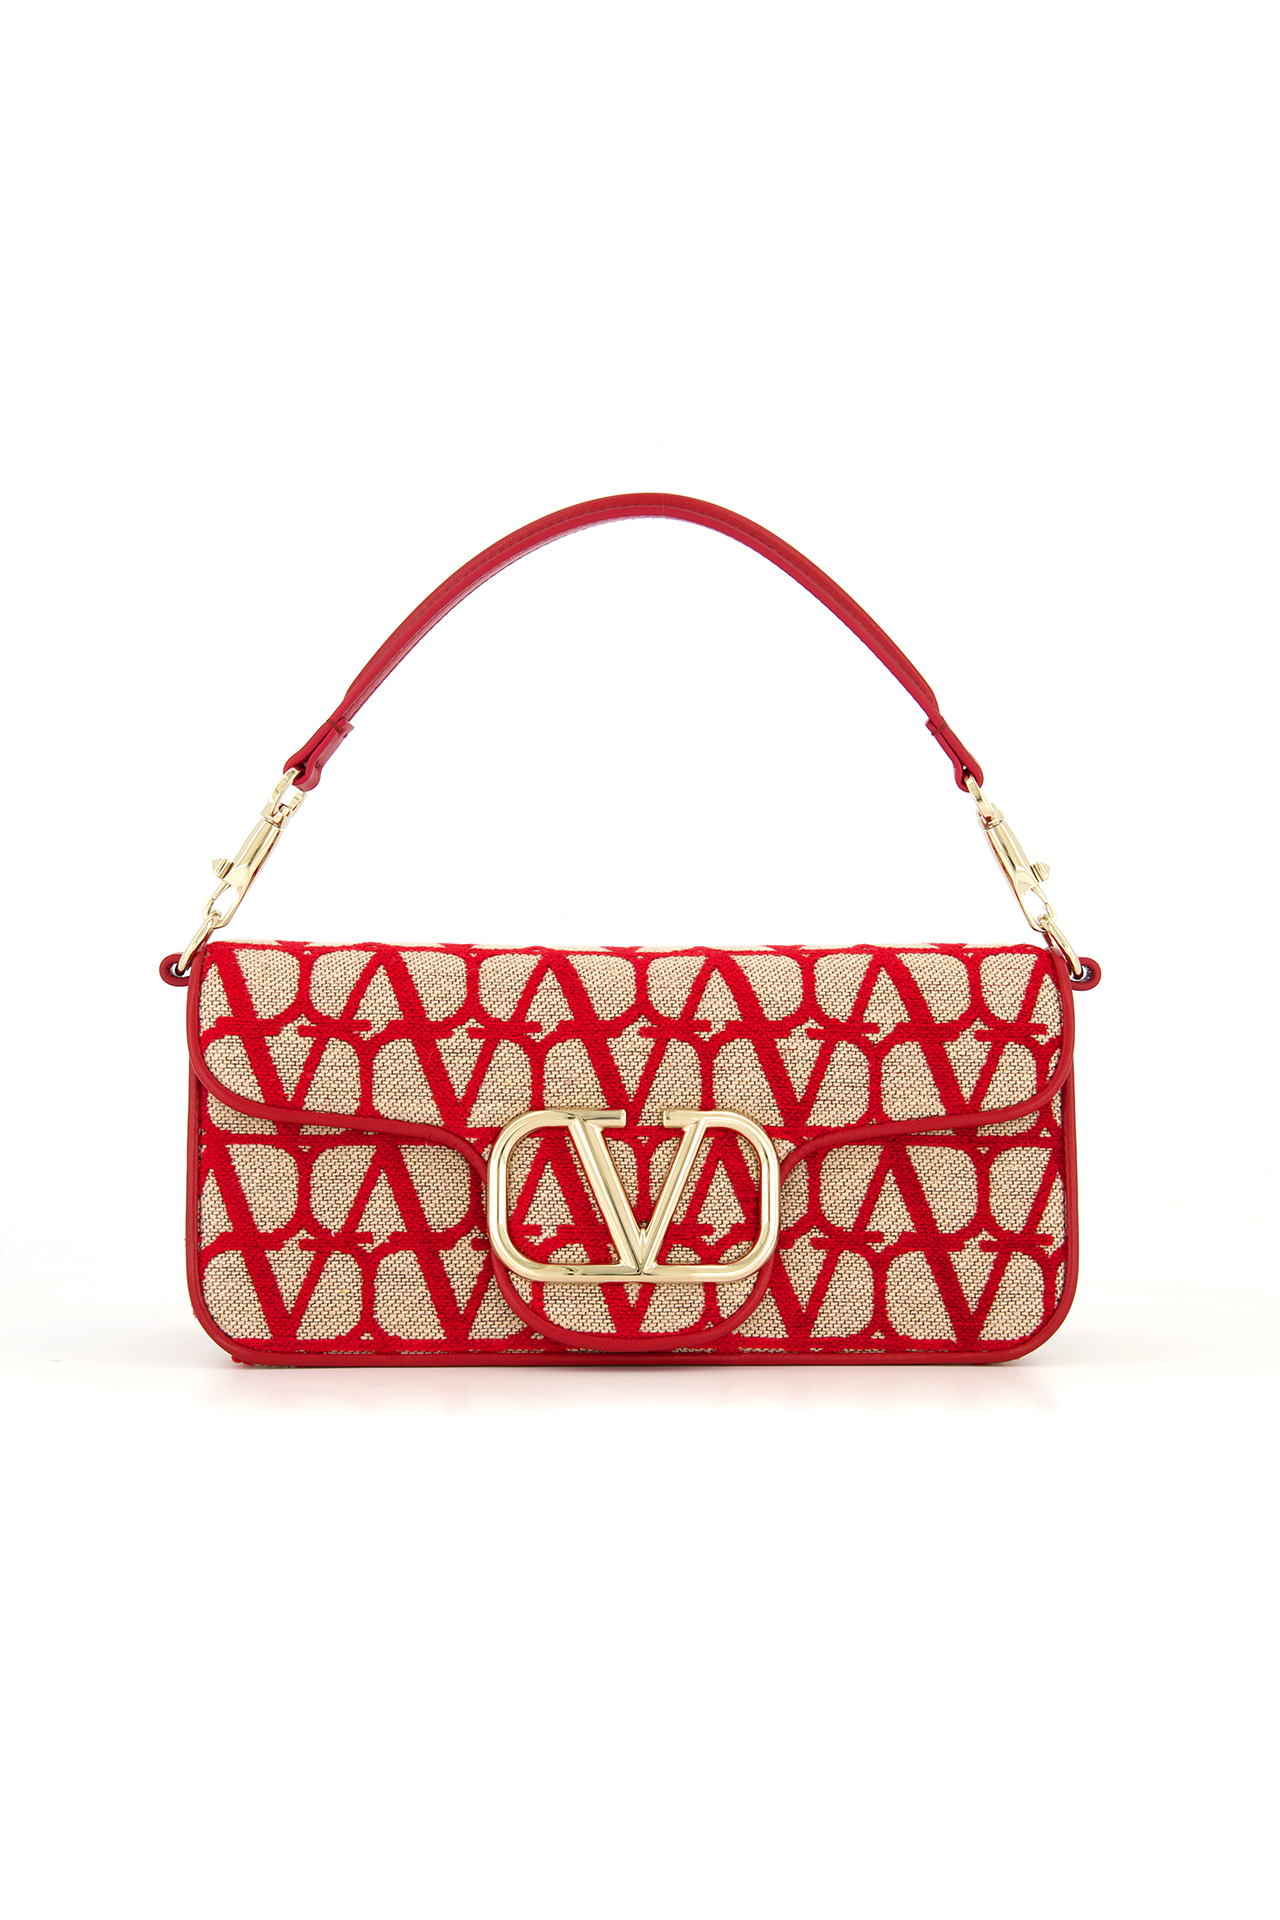 Valentino Garavani Small Loco Shoulder Bag in Red